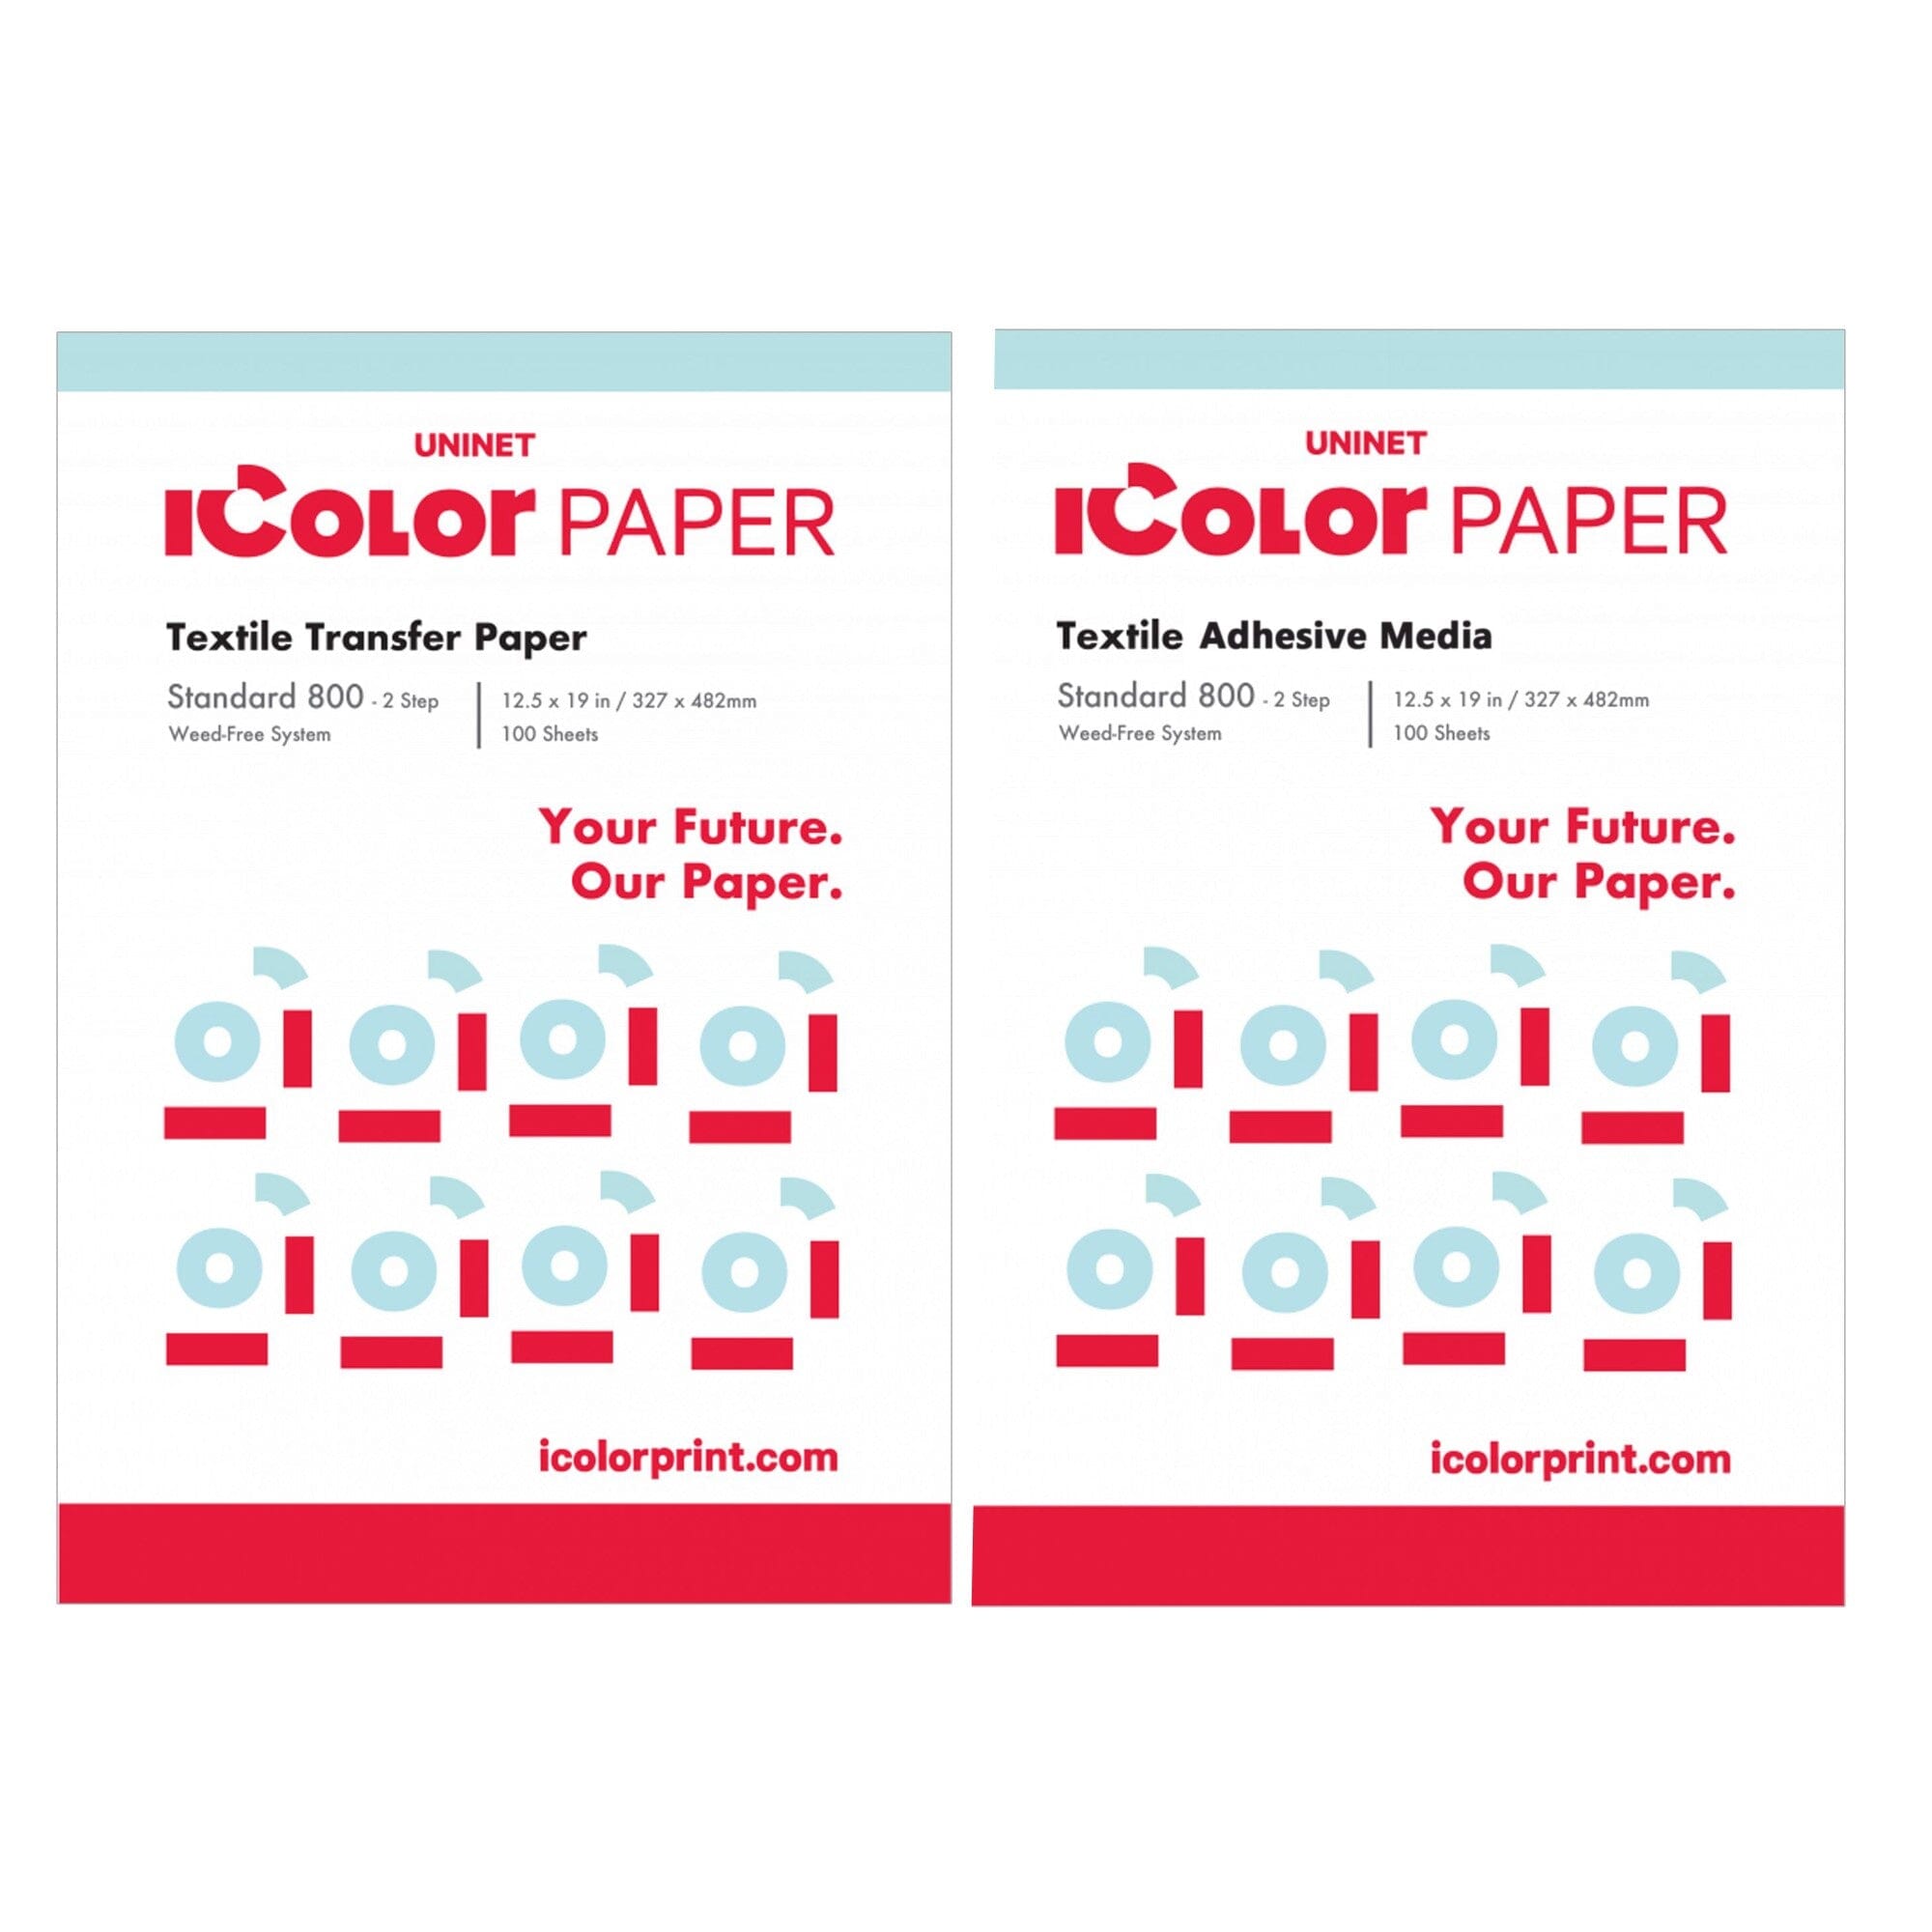 Papier-mâché objects — design solutions